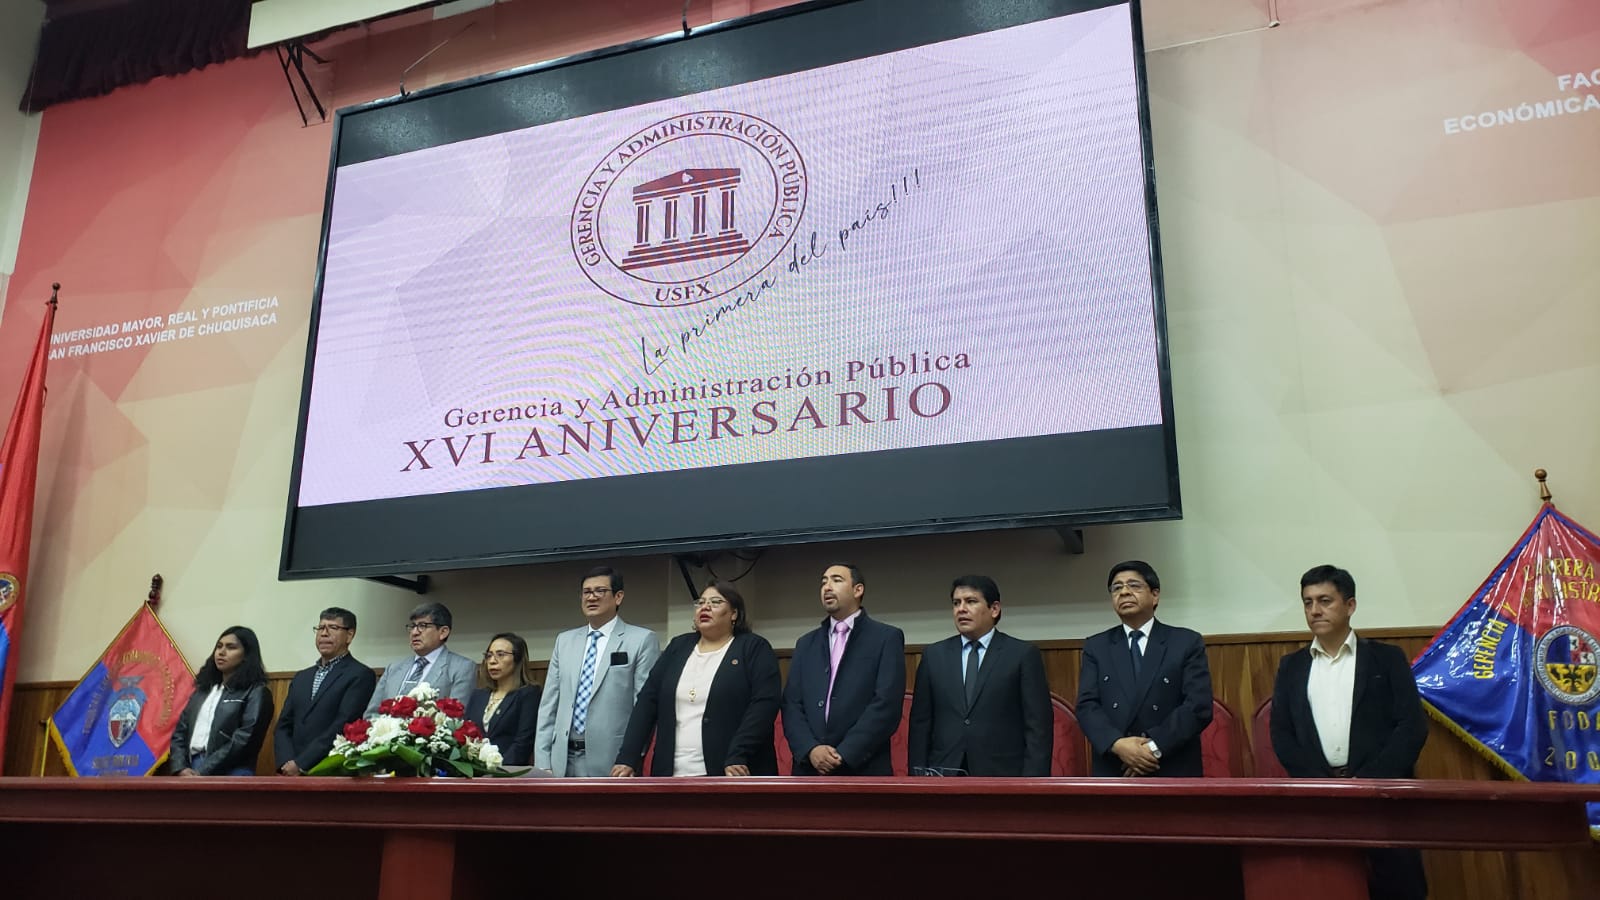 Gerencia y Administración Pública celebró sus 16 años